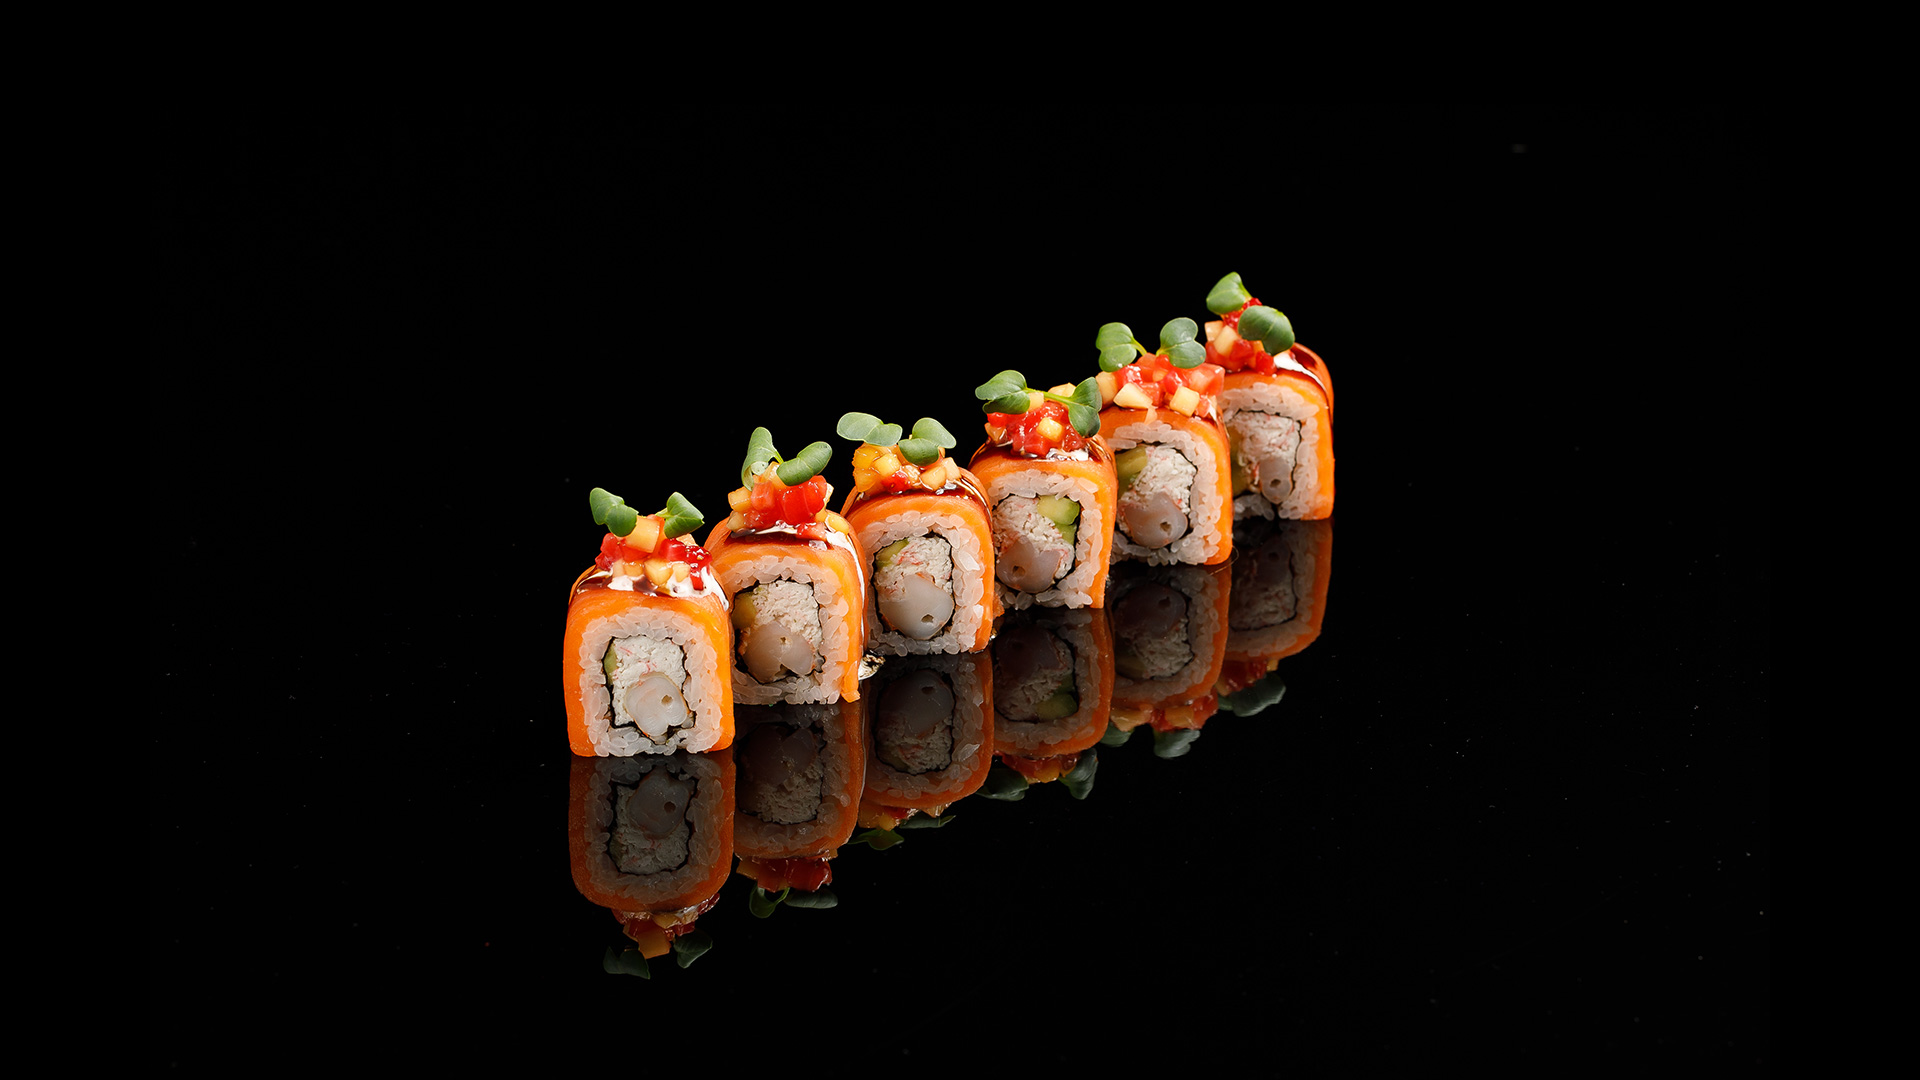 Сайт нова суши